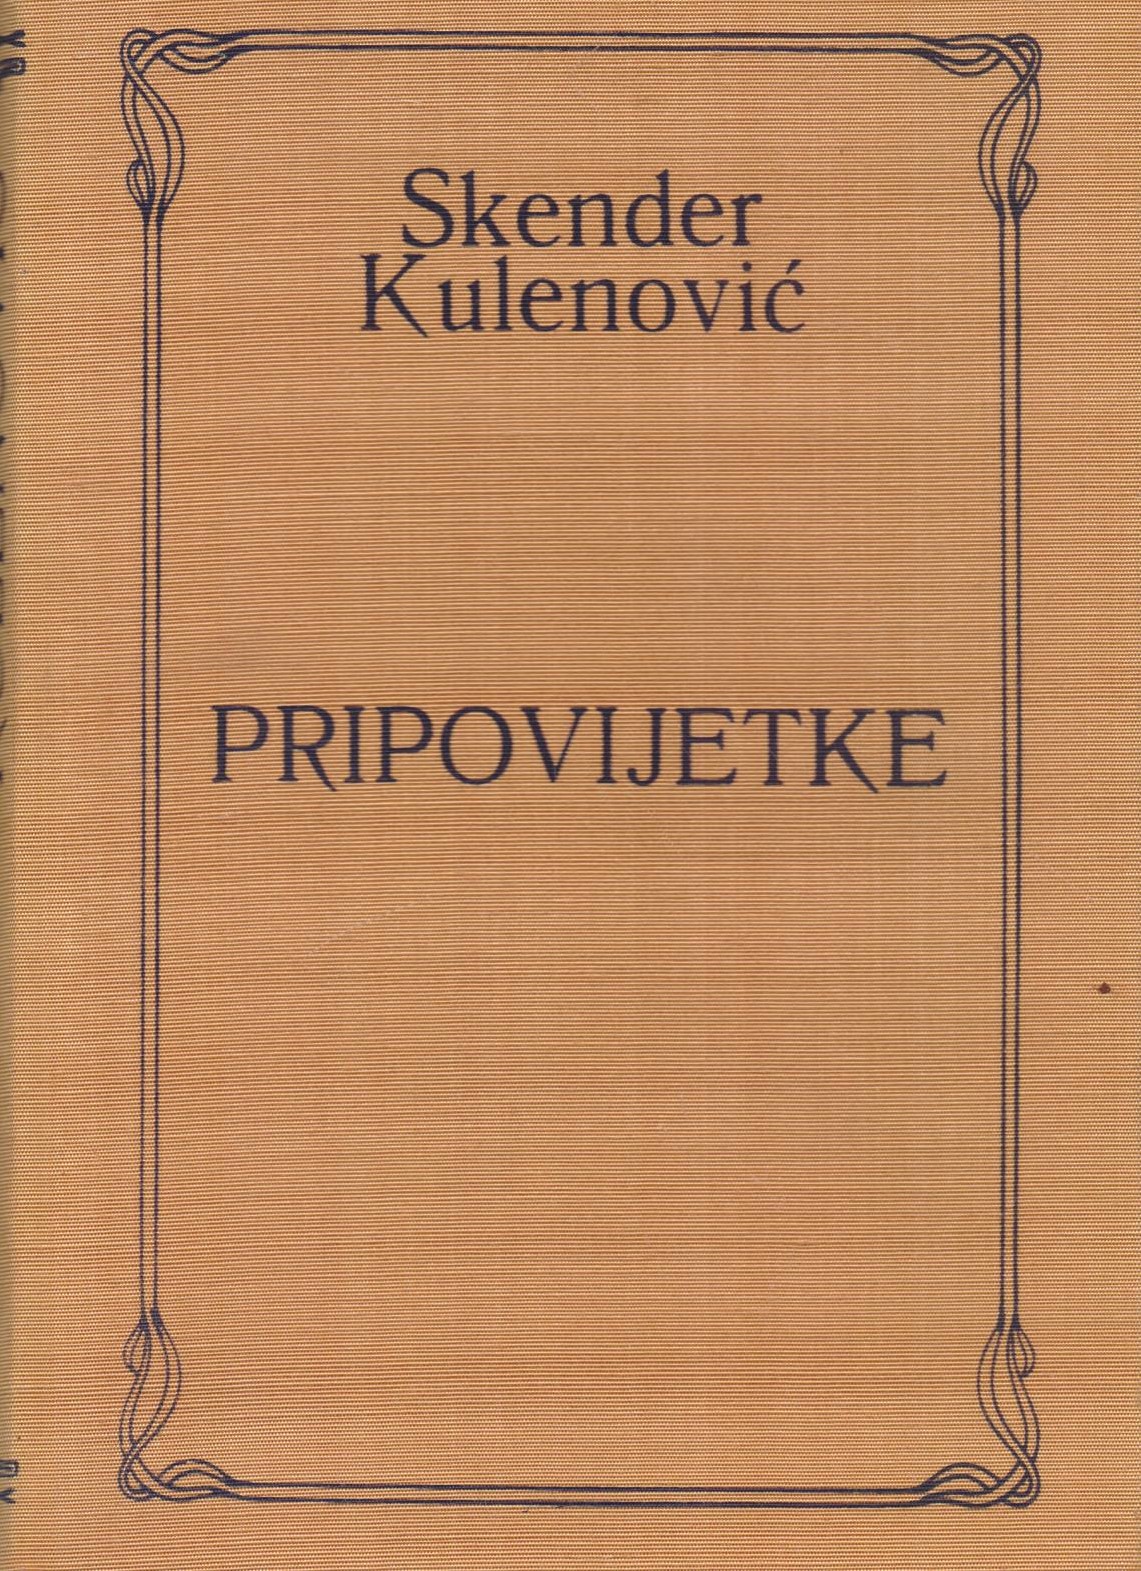 Pripovijetke Kulenović Skender